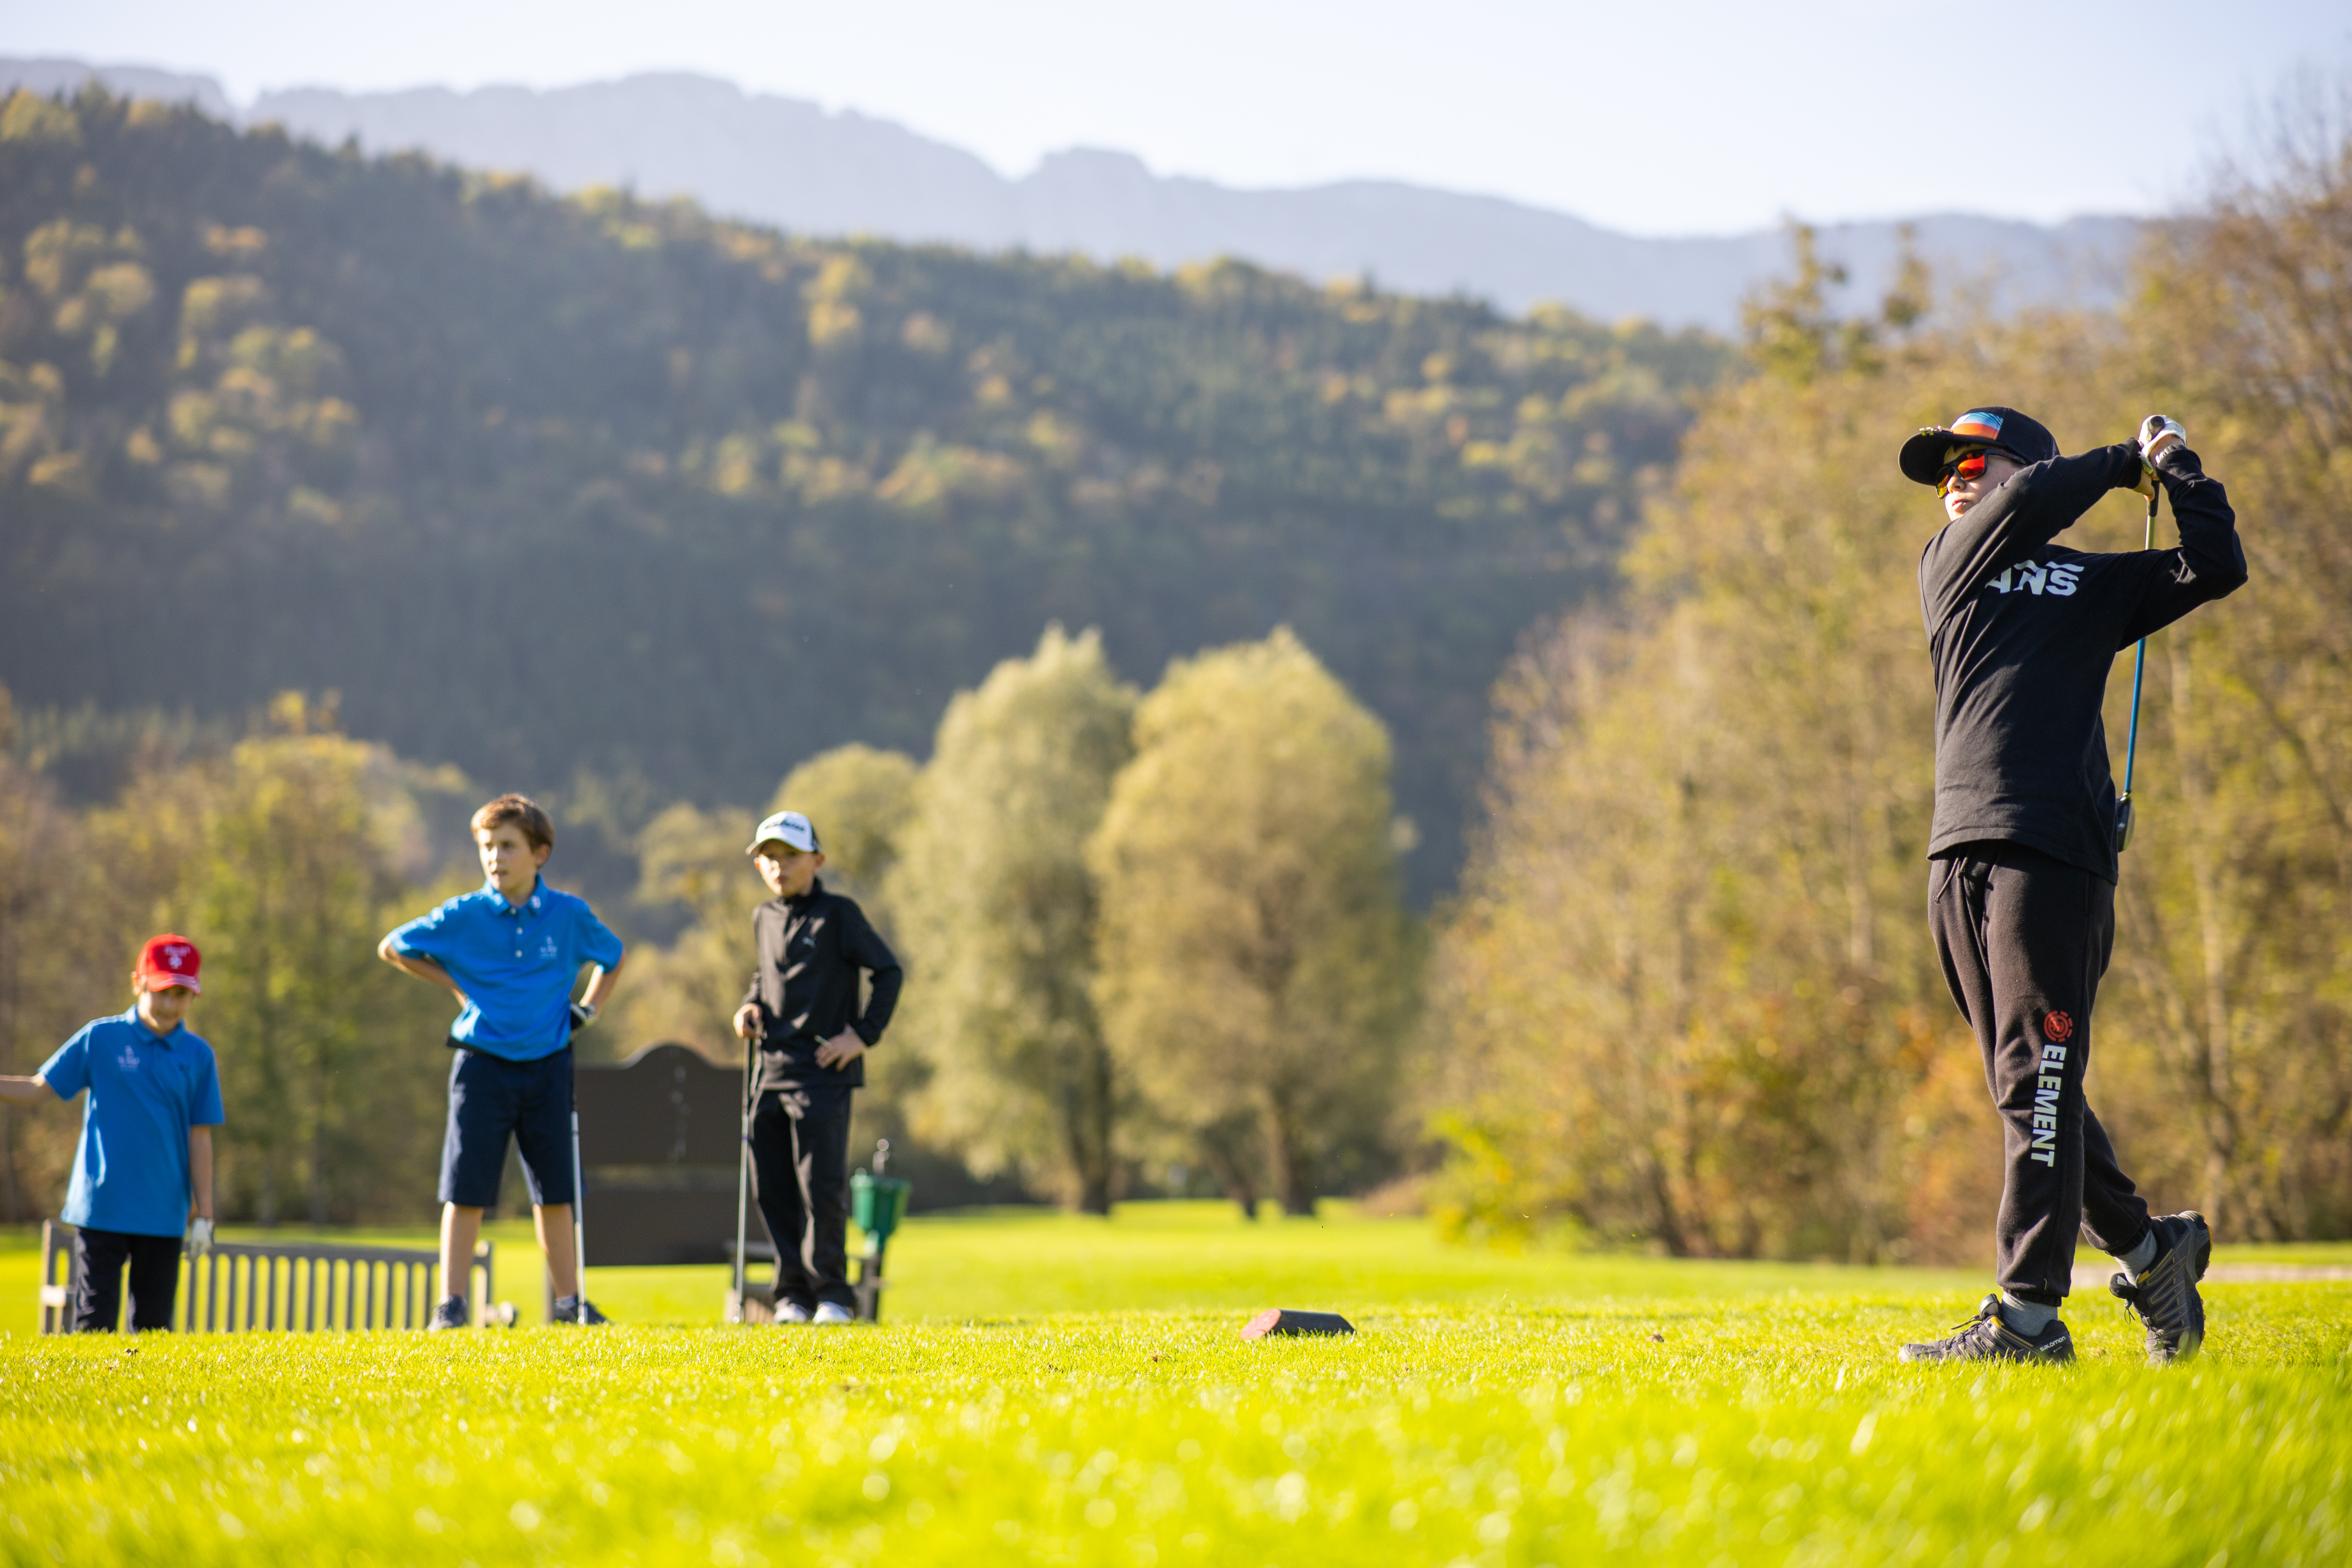 Golf enfants automne ©Remi Portier (16)